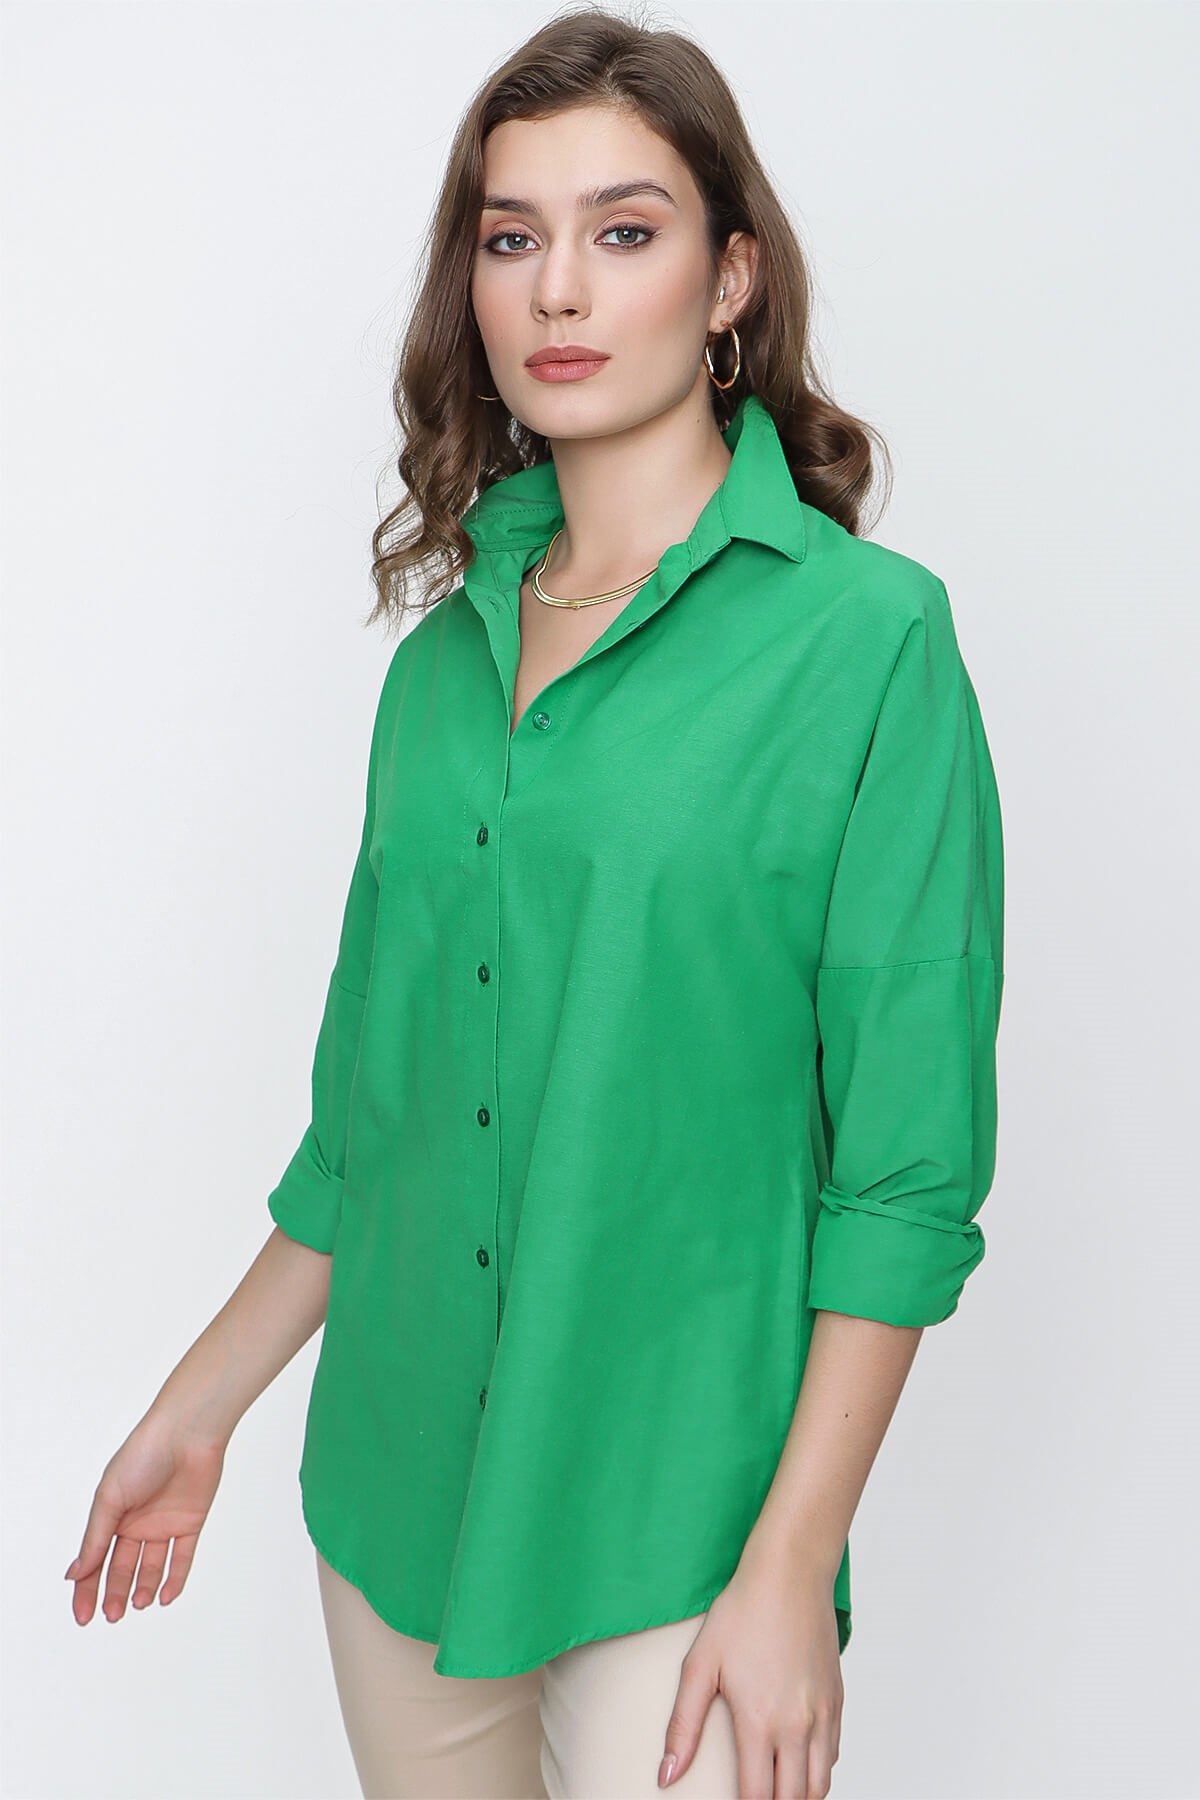 Kadın Yeşil Geniş Yaka Düz Gömlek - Butik Buruç